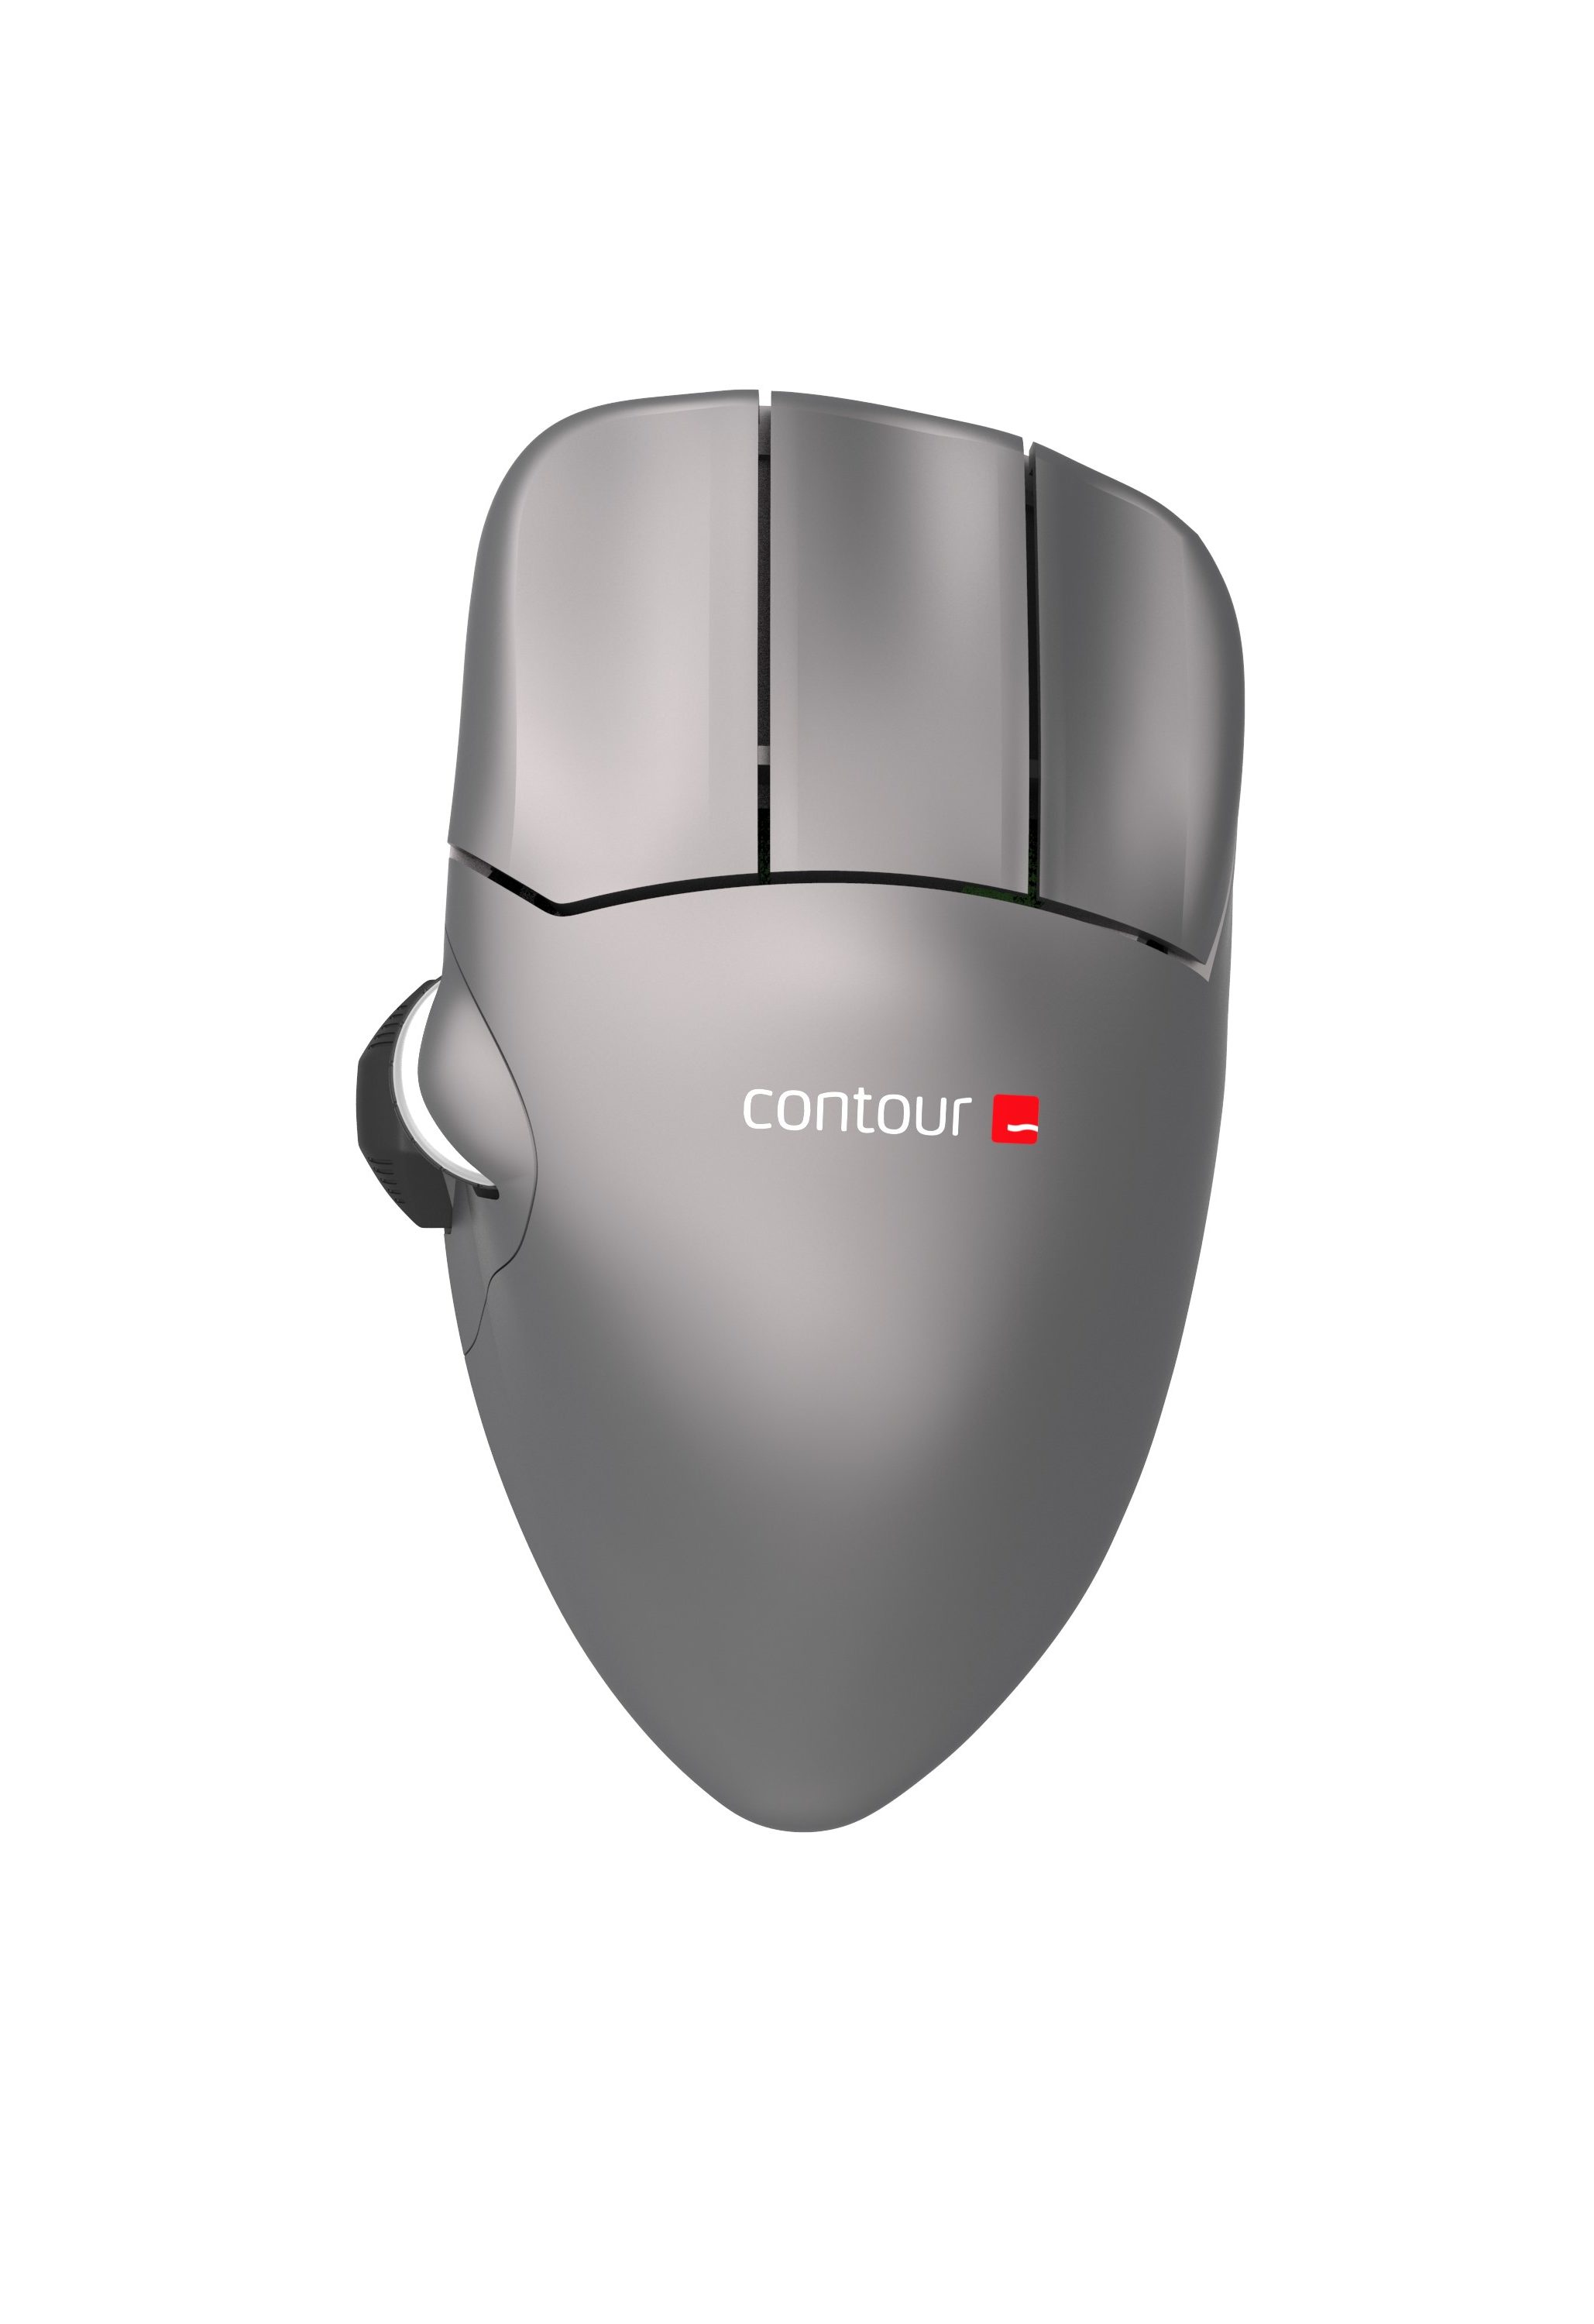 Contour Mouse Wireless – Contour Design